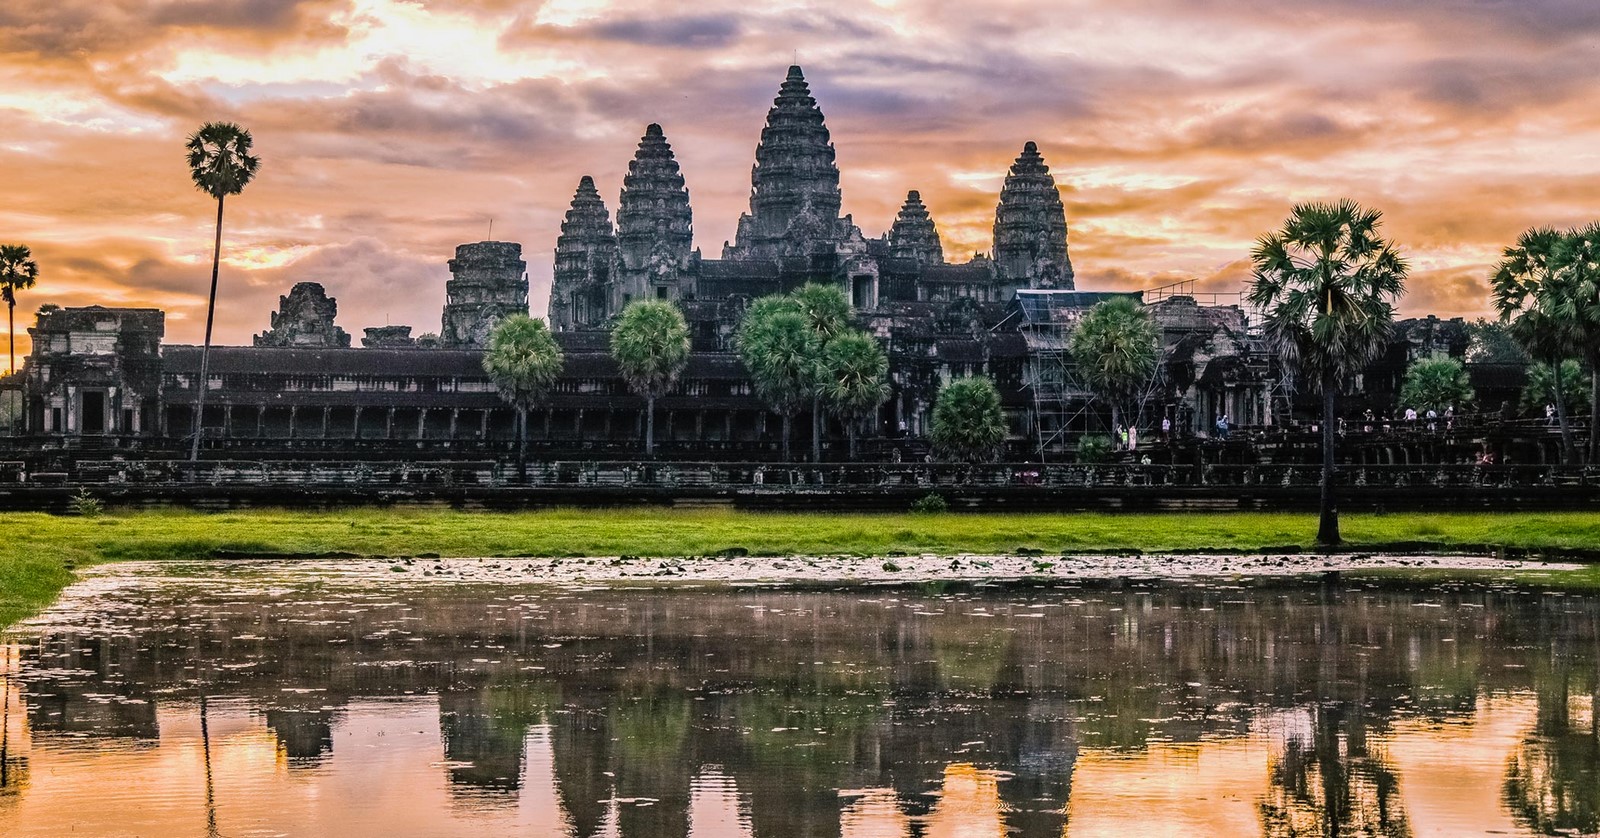 Angkor Wat, Cambodia - Sheet1